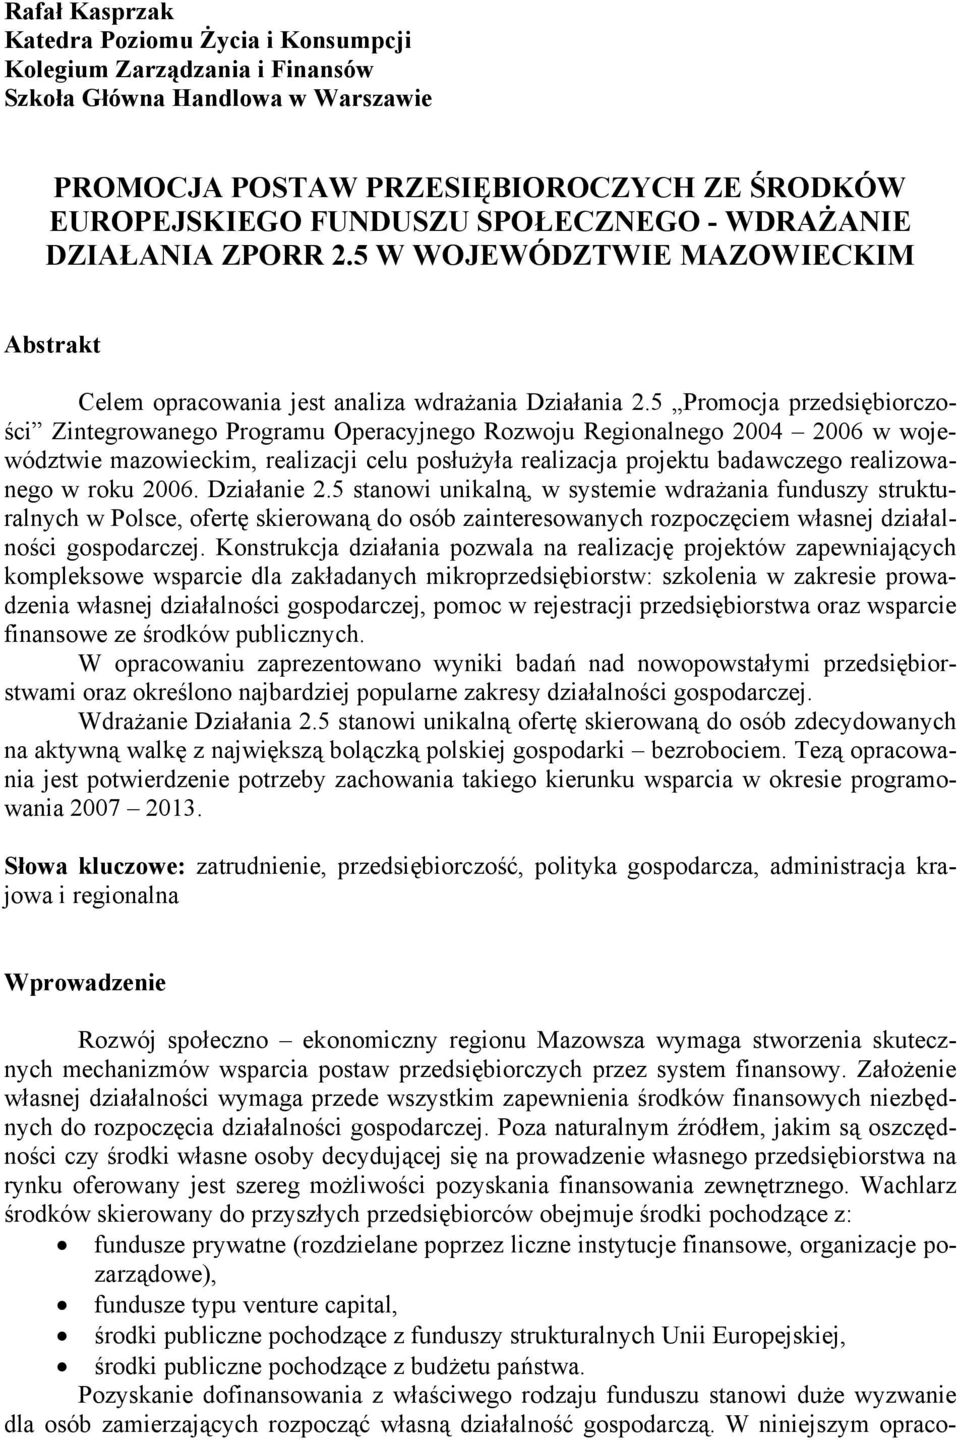 5 Promocja przedsiębiorczości Zintegrowanego Programu Operacyjnego Rozwoju Regionalnego 2004 2006 w województwie mazowieckim, realizacji celu posłużyła realizacja projektu badawczego realizowanego w